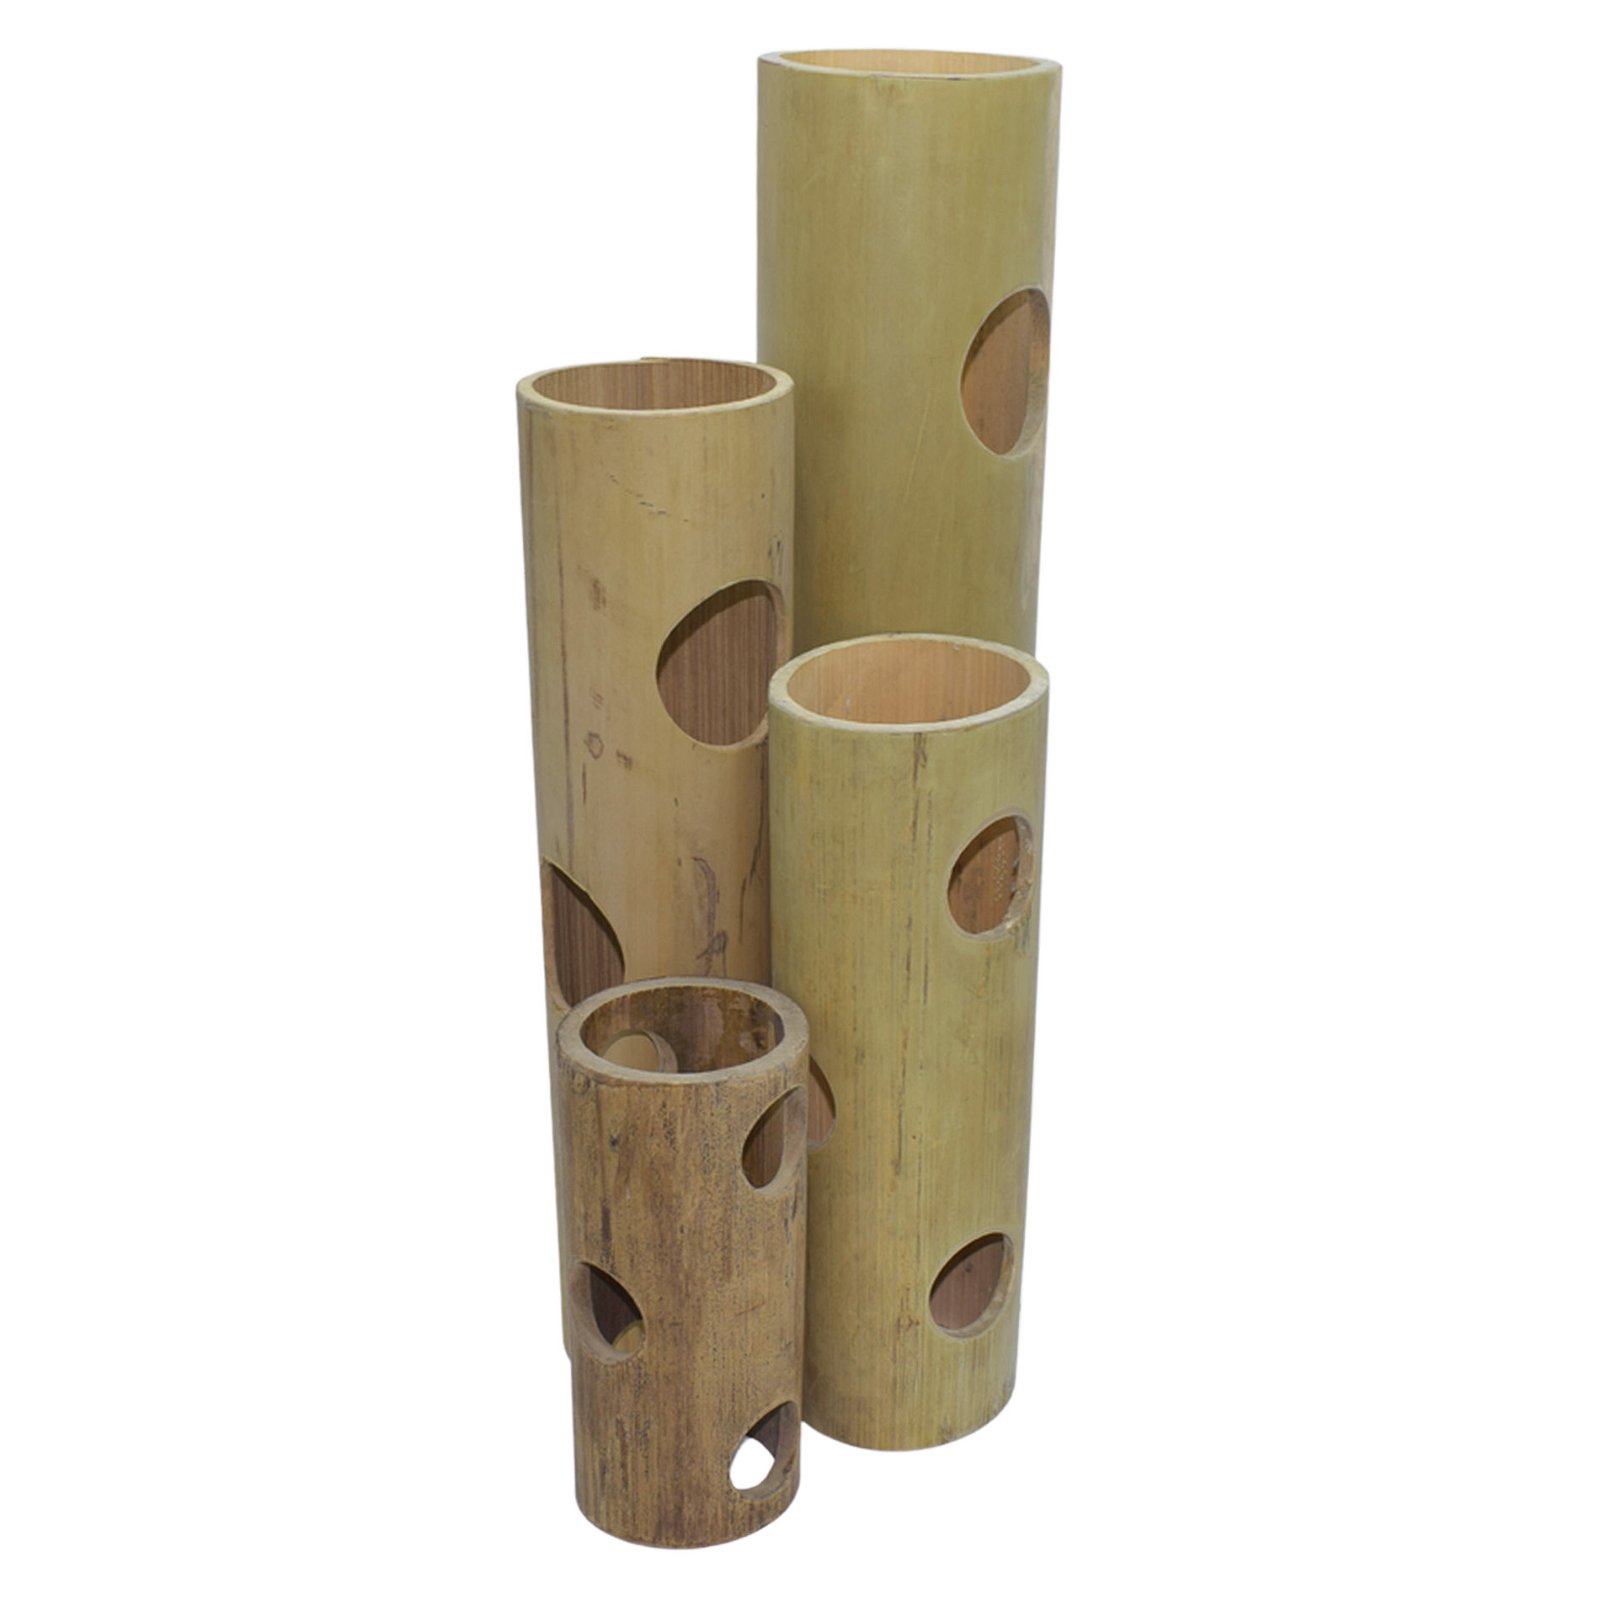 Bambusröhre mit 5 Öffnungen